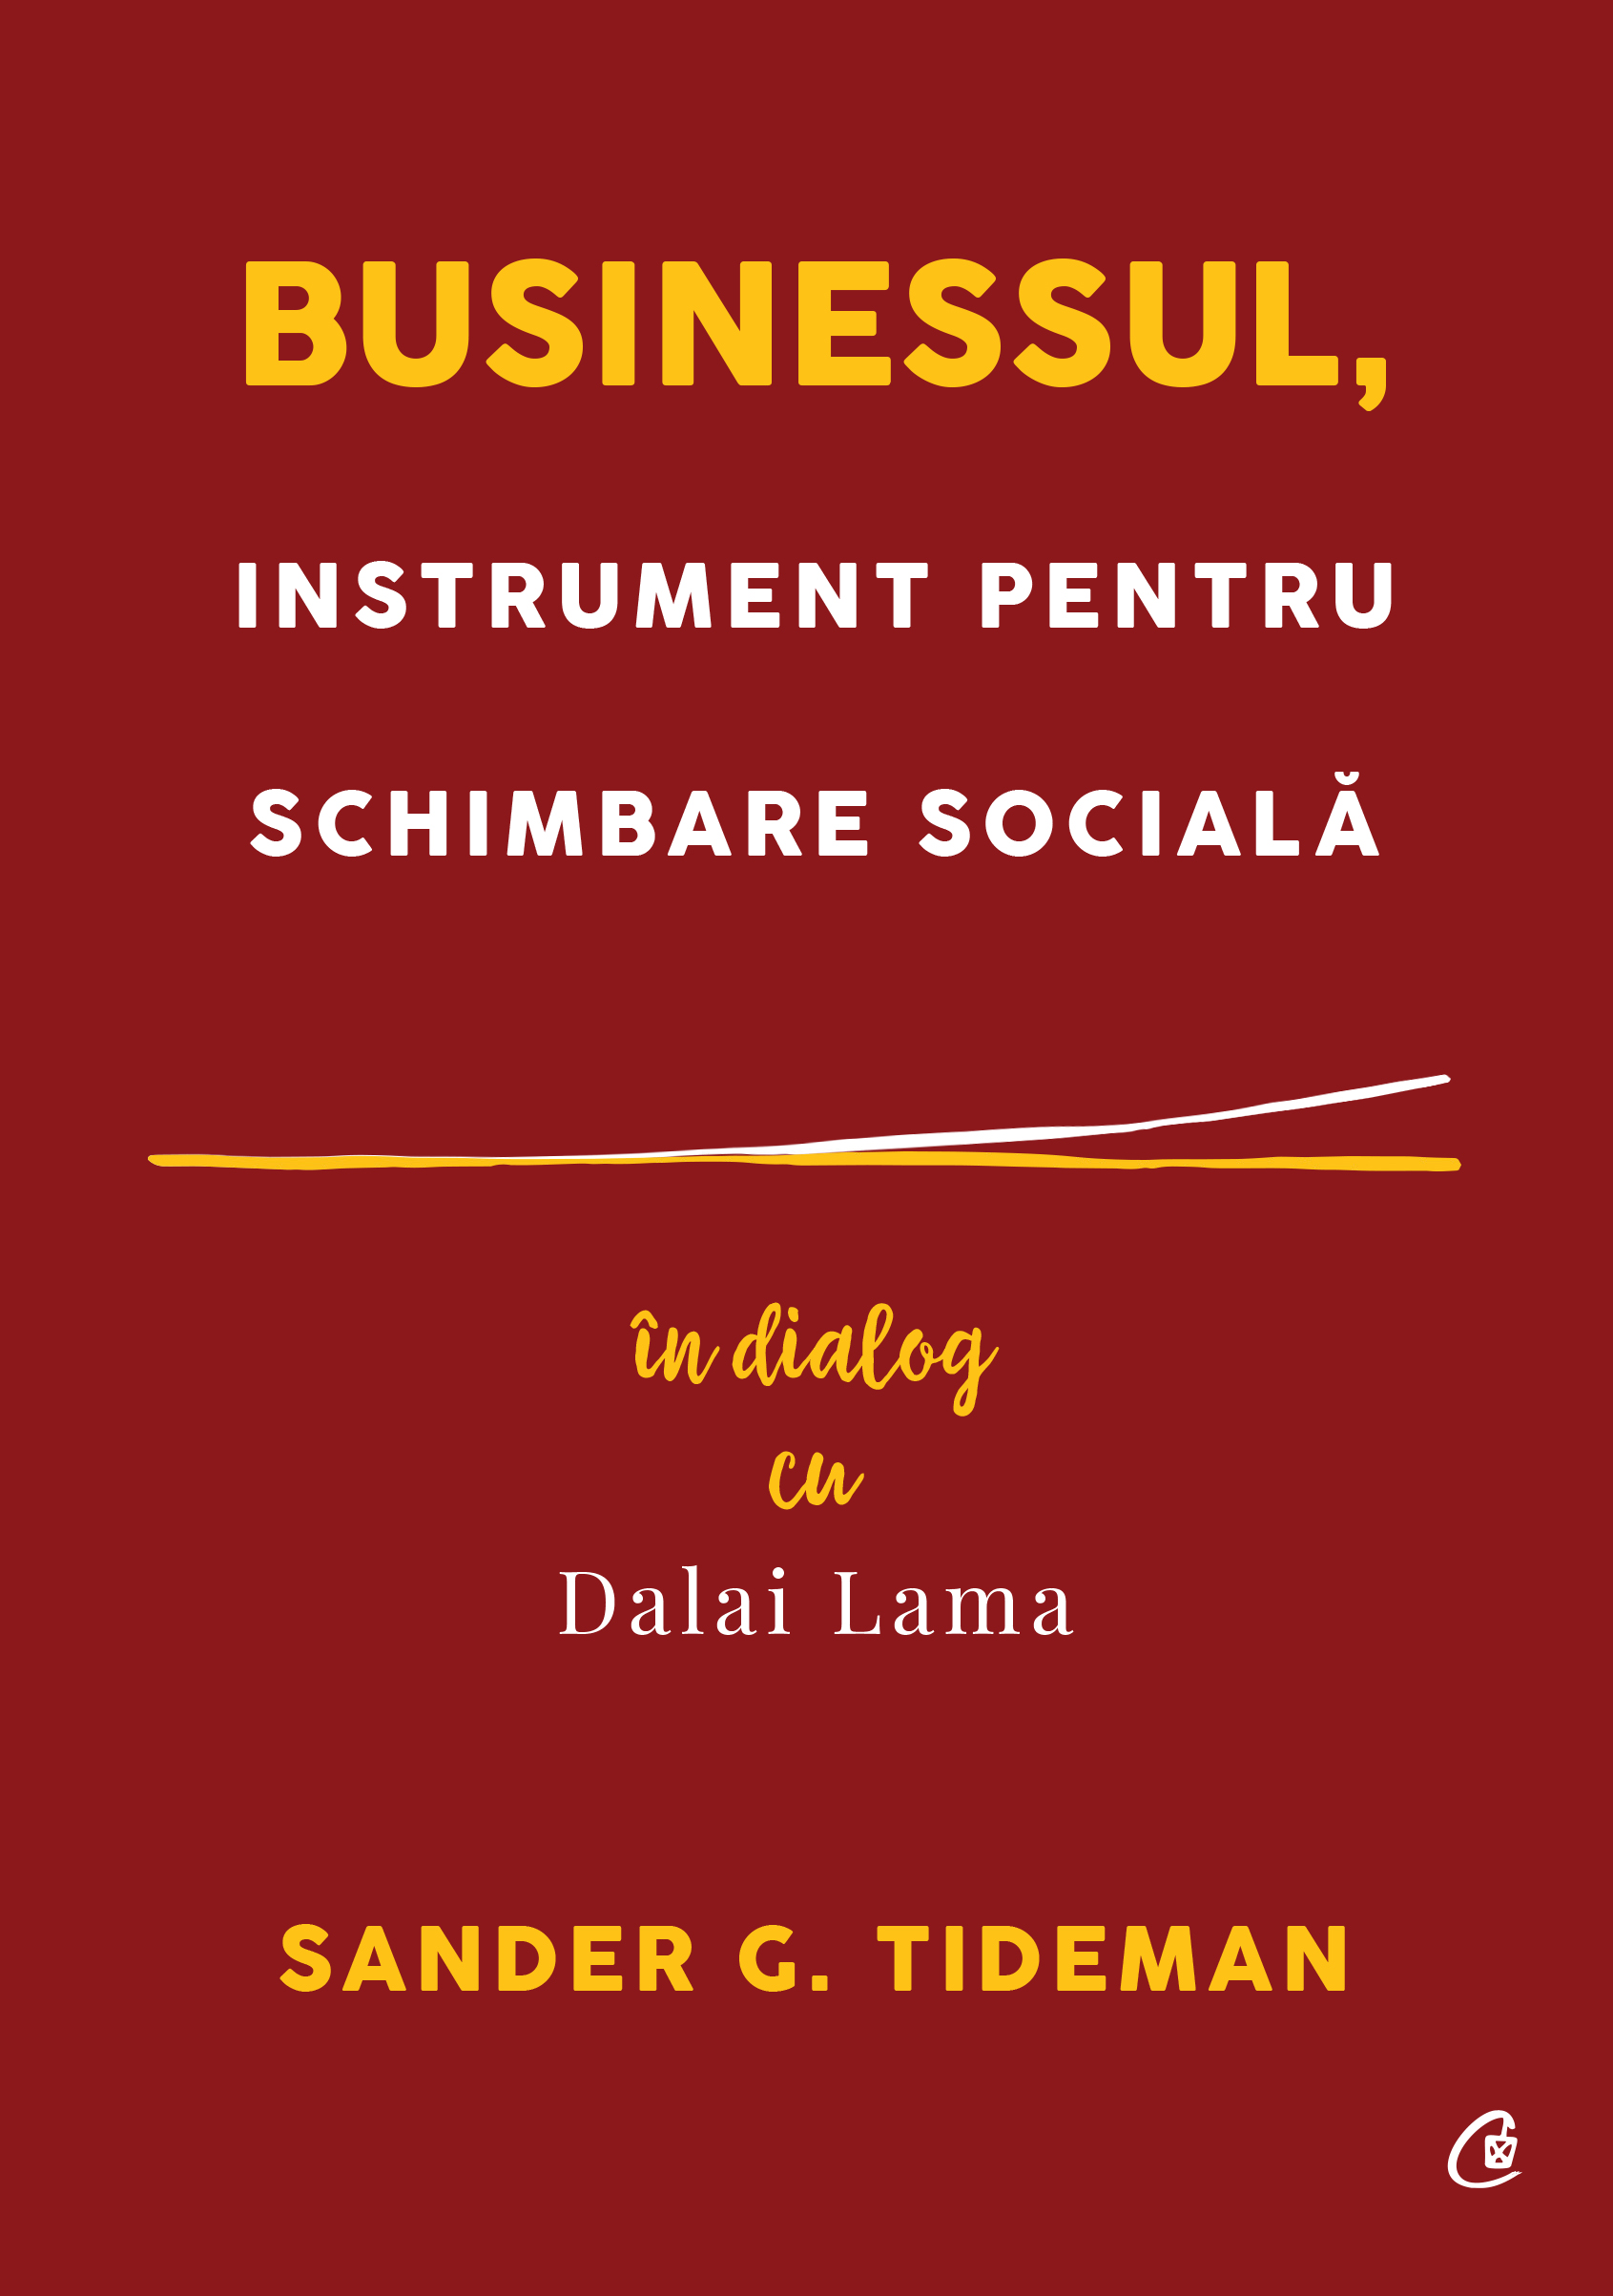 Businessul, instrument pentru schimbare sociala | Sander G. Tideman carturesti.ro poza noua